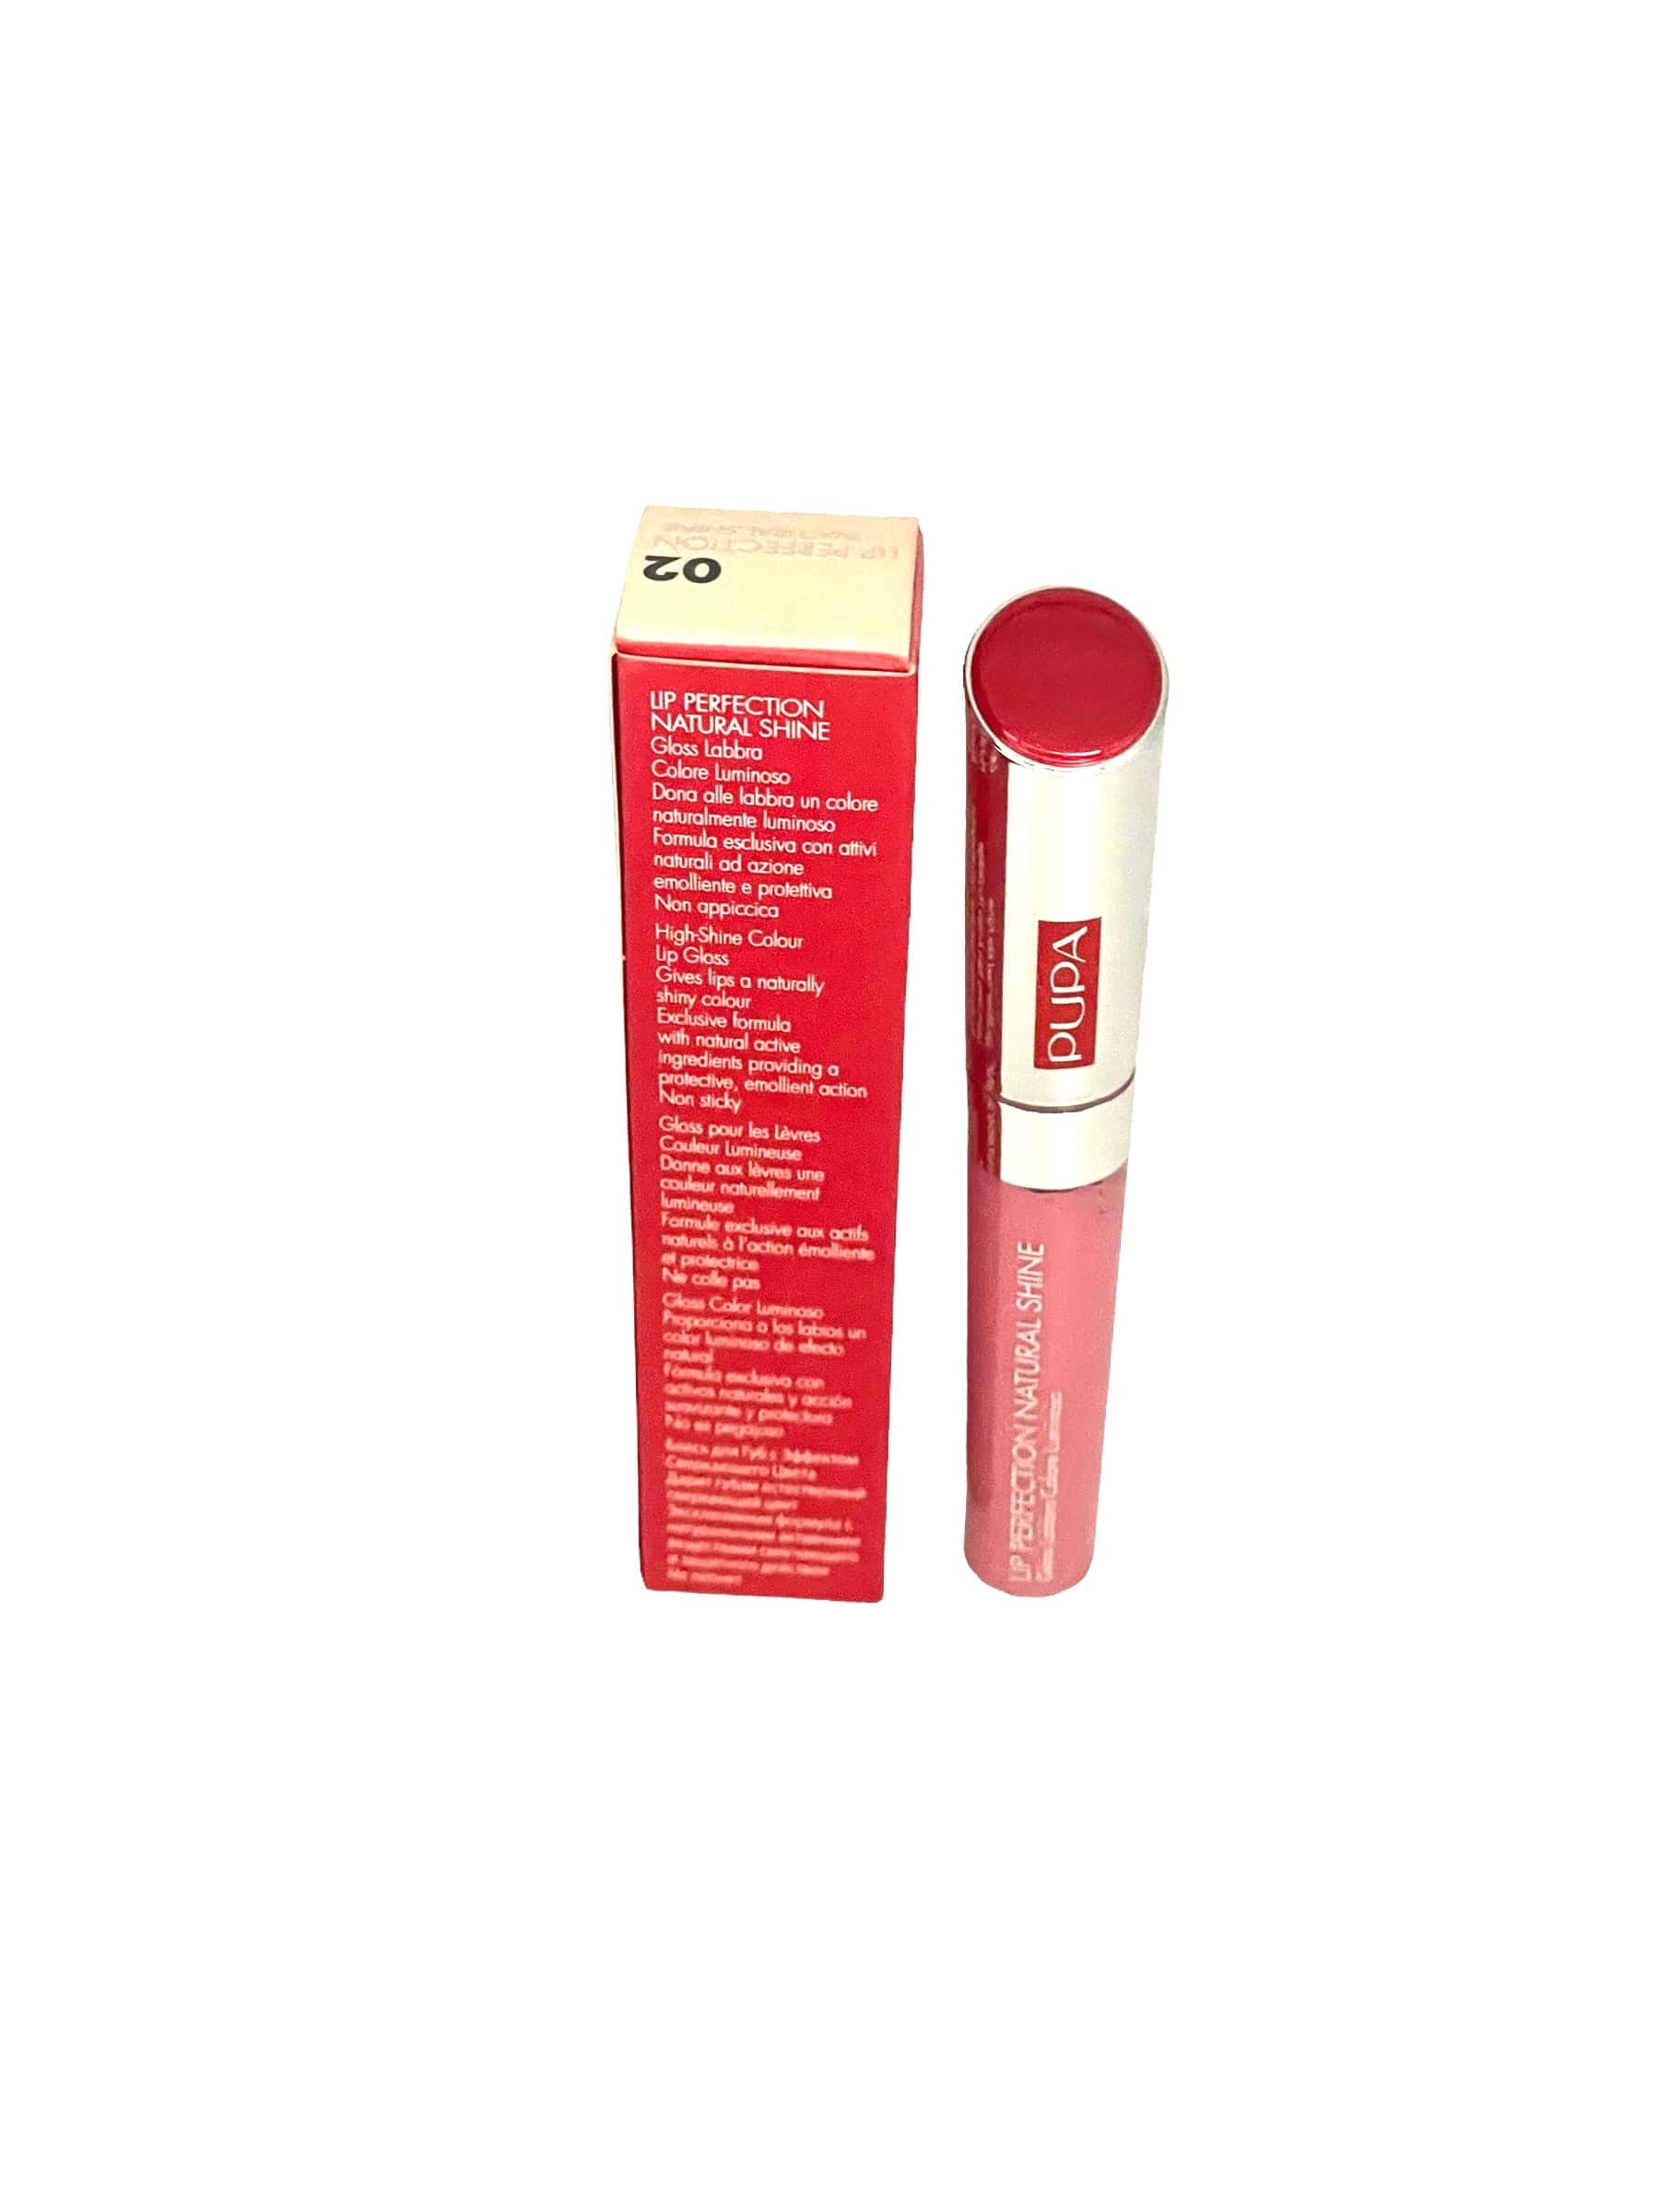 Pupa Milano Lip Gloss Perfection Natural Shine Baby Pink #02 Makeup